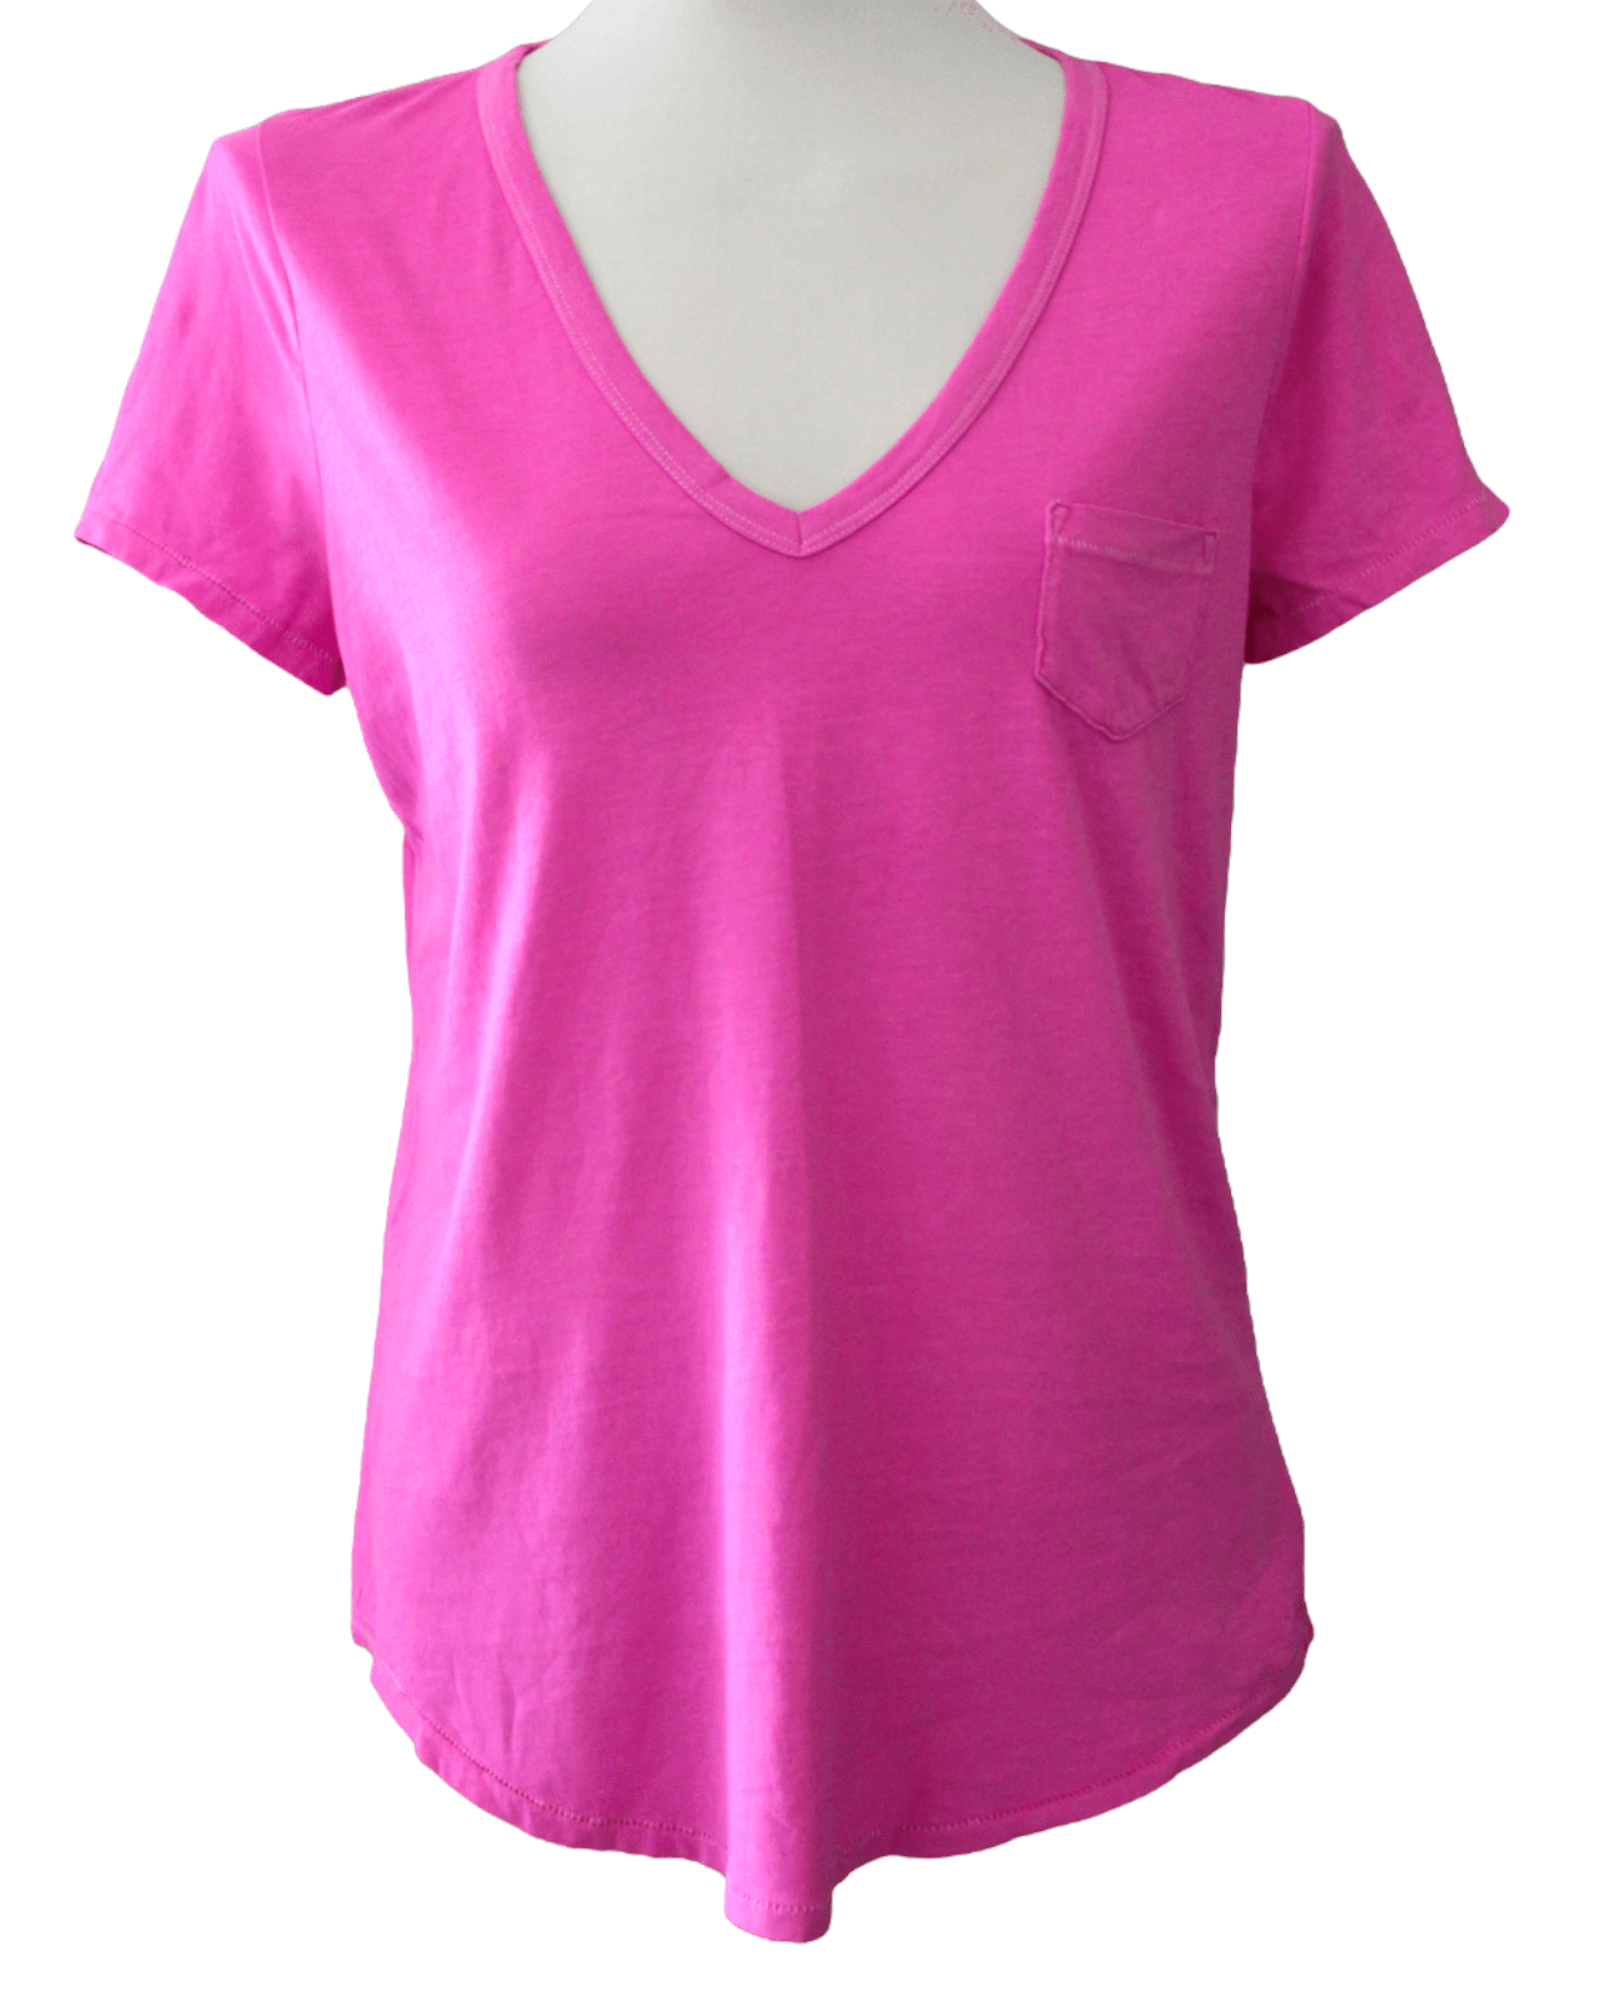 Bright Winter GAP taffy pink v-neck pocket t-shirt tee